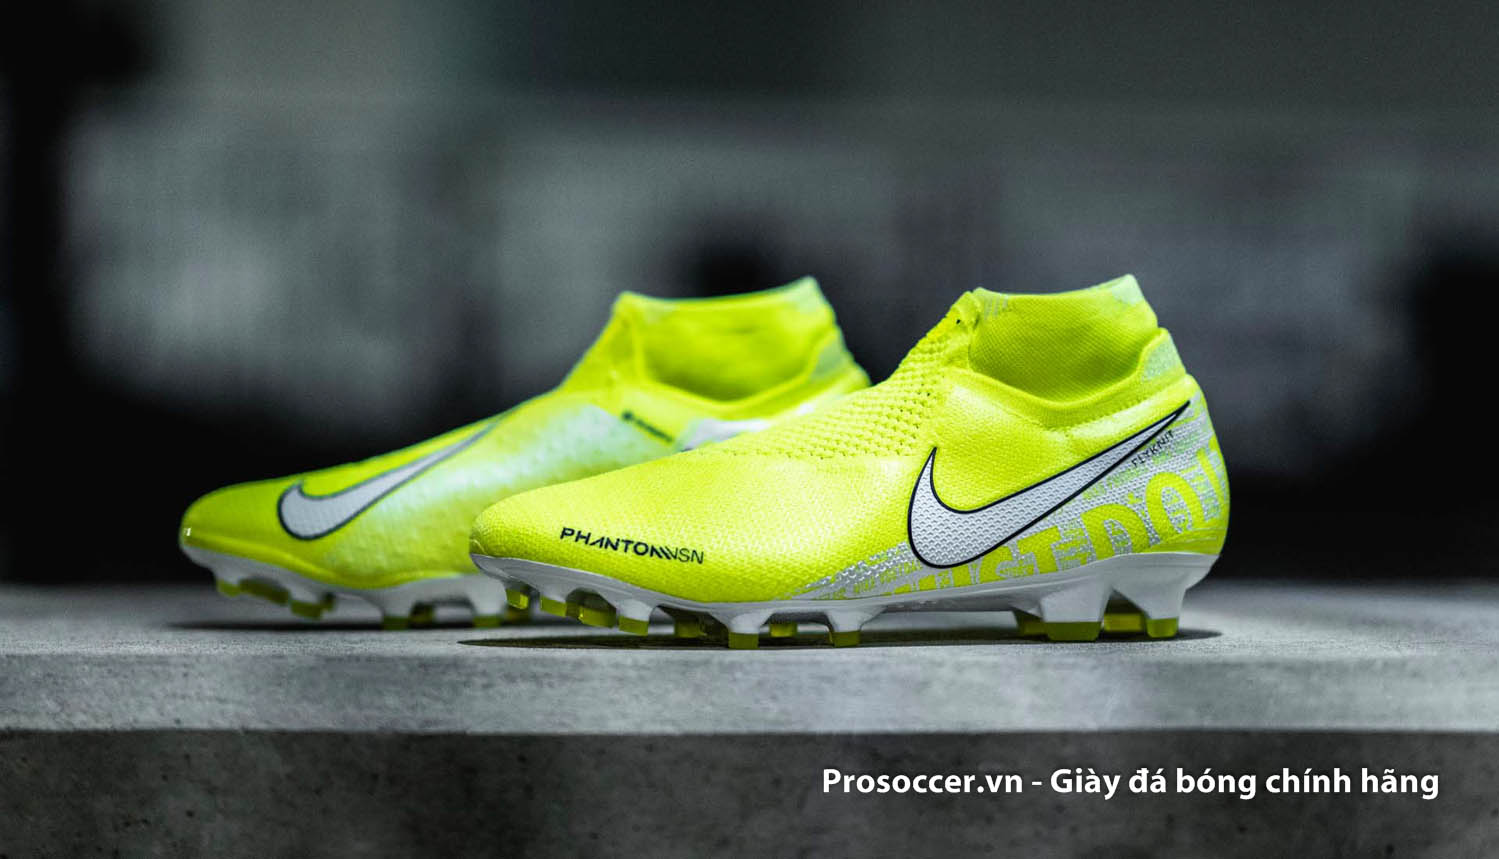 Nike đã giới thiệu nhiều phiên bản giày bóng đá cổ cao với các dòng giày khác nhau